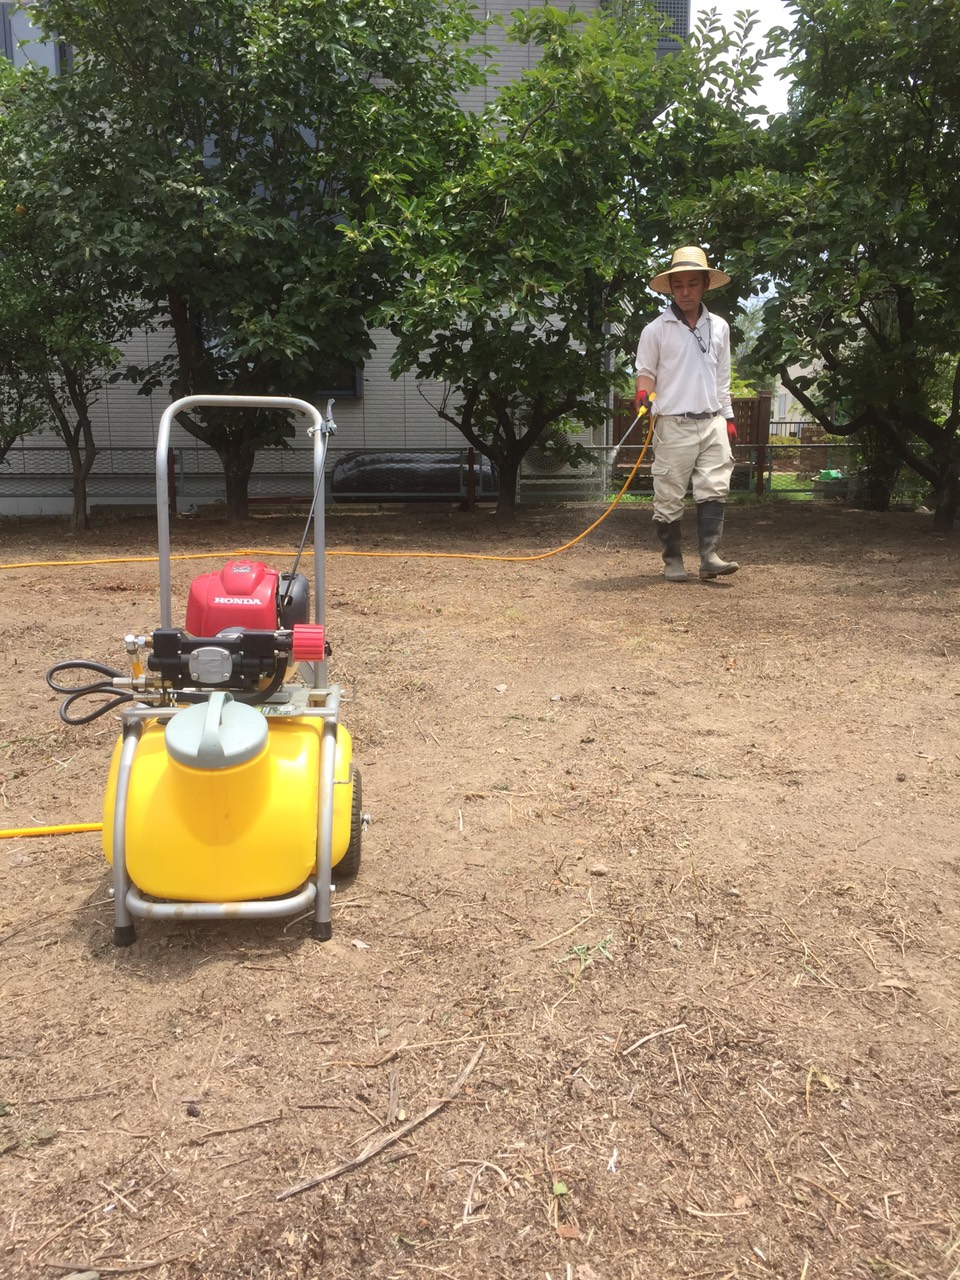 ガーデニンググッズ】除草剤・防虫剤の消毒散布に使用する噴霧器のおすすめを比較してみた – 簡単にできる草刈り・草むしりの方法 コツ